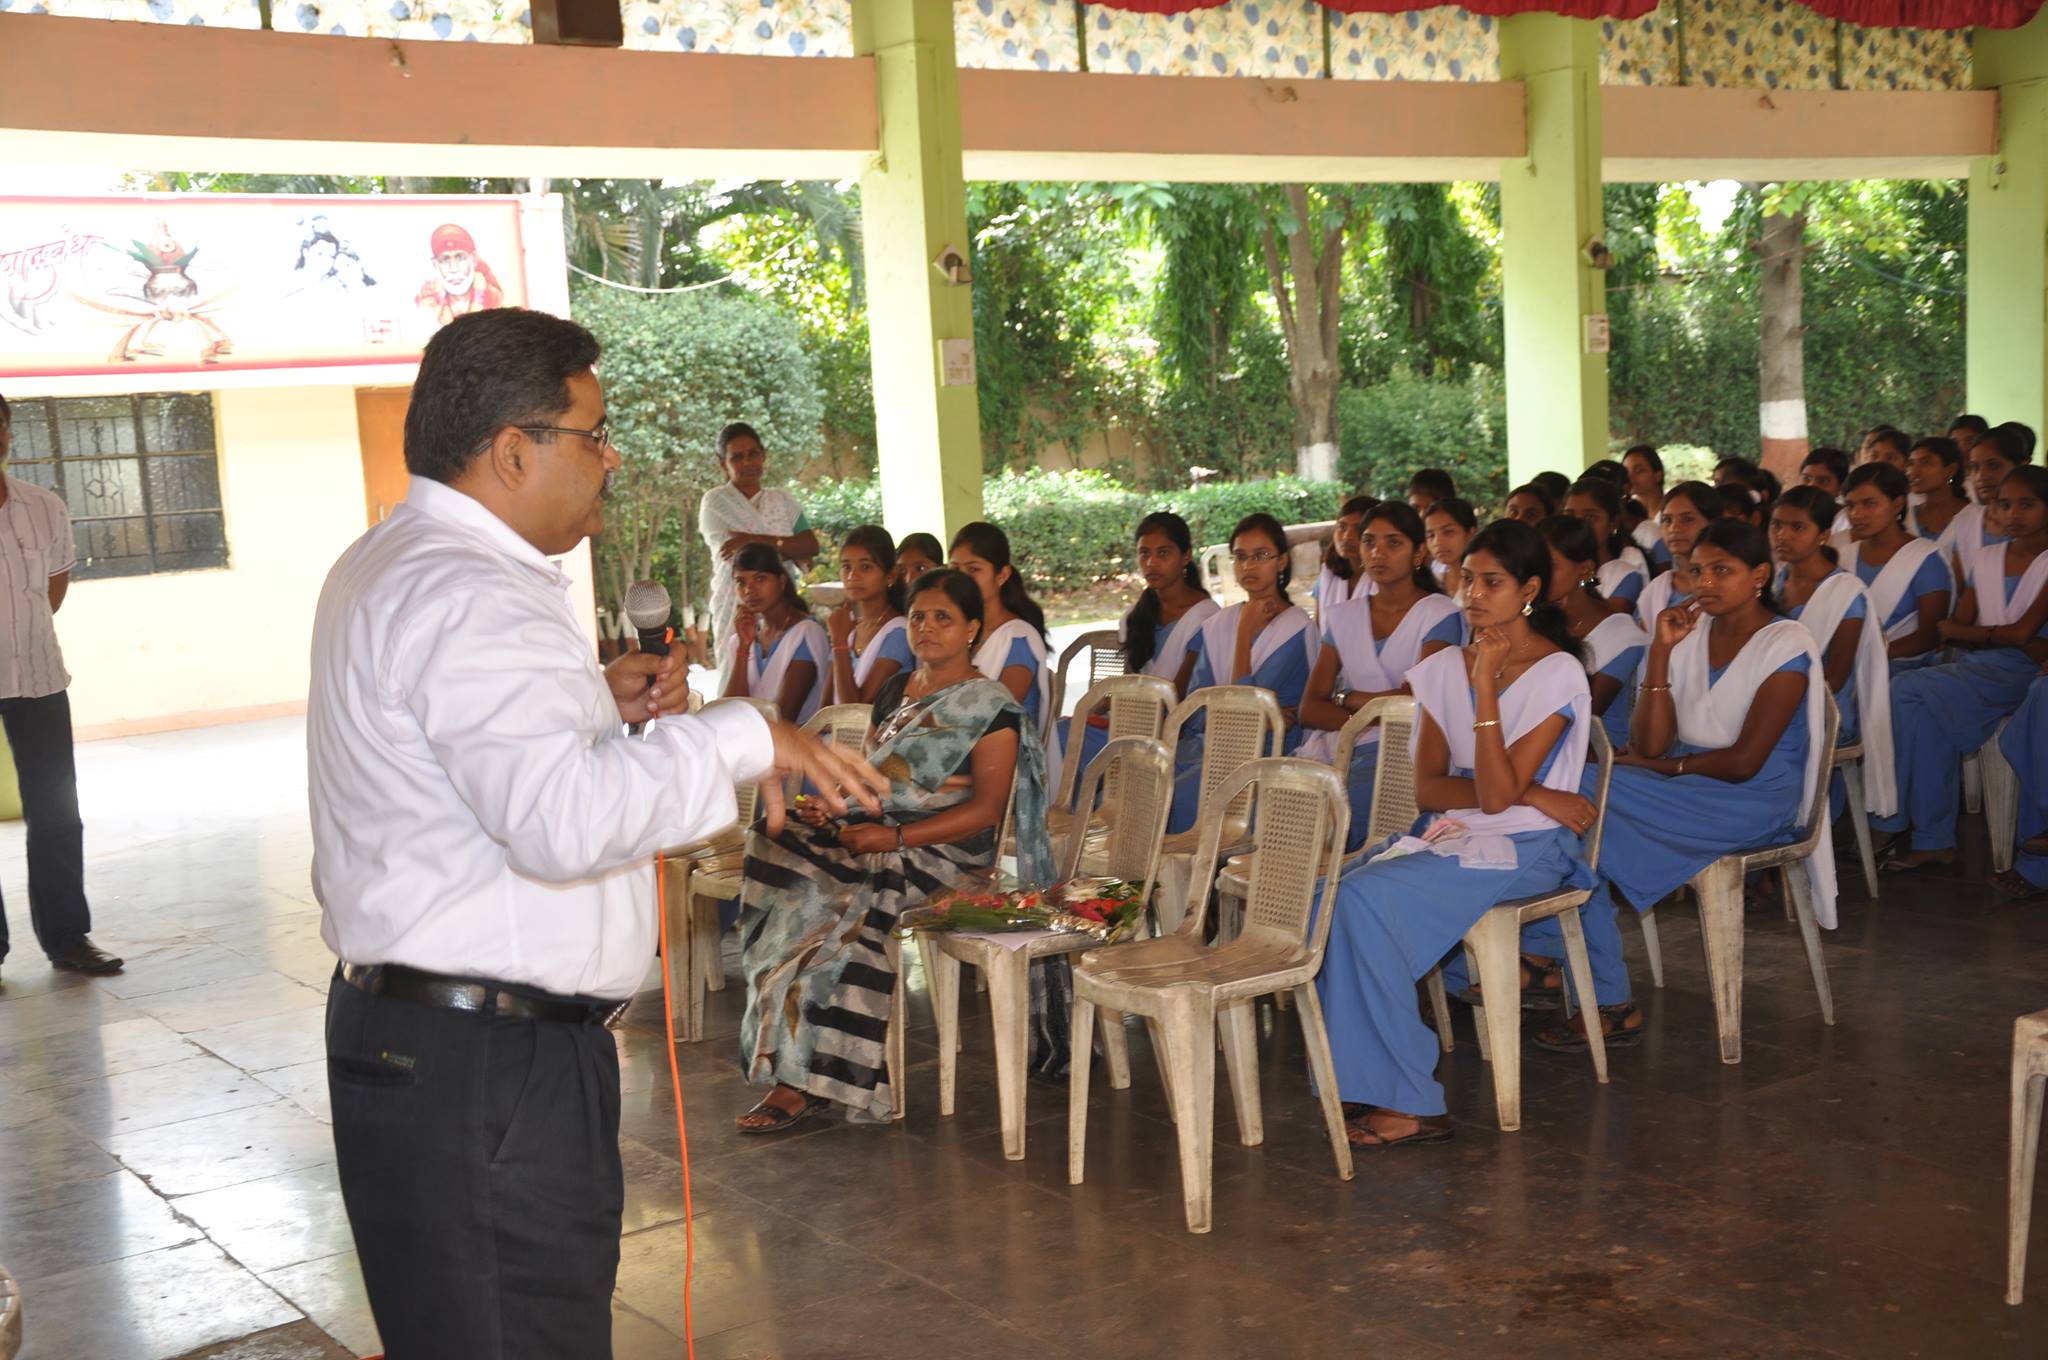 Yash Career Guru speaking on career guidance in Pune school